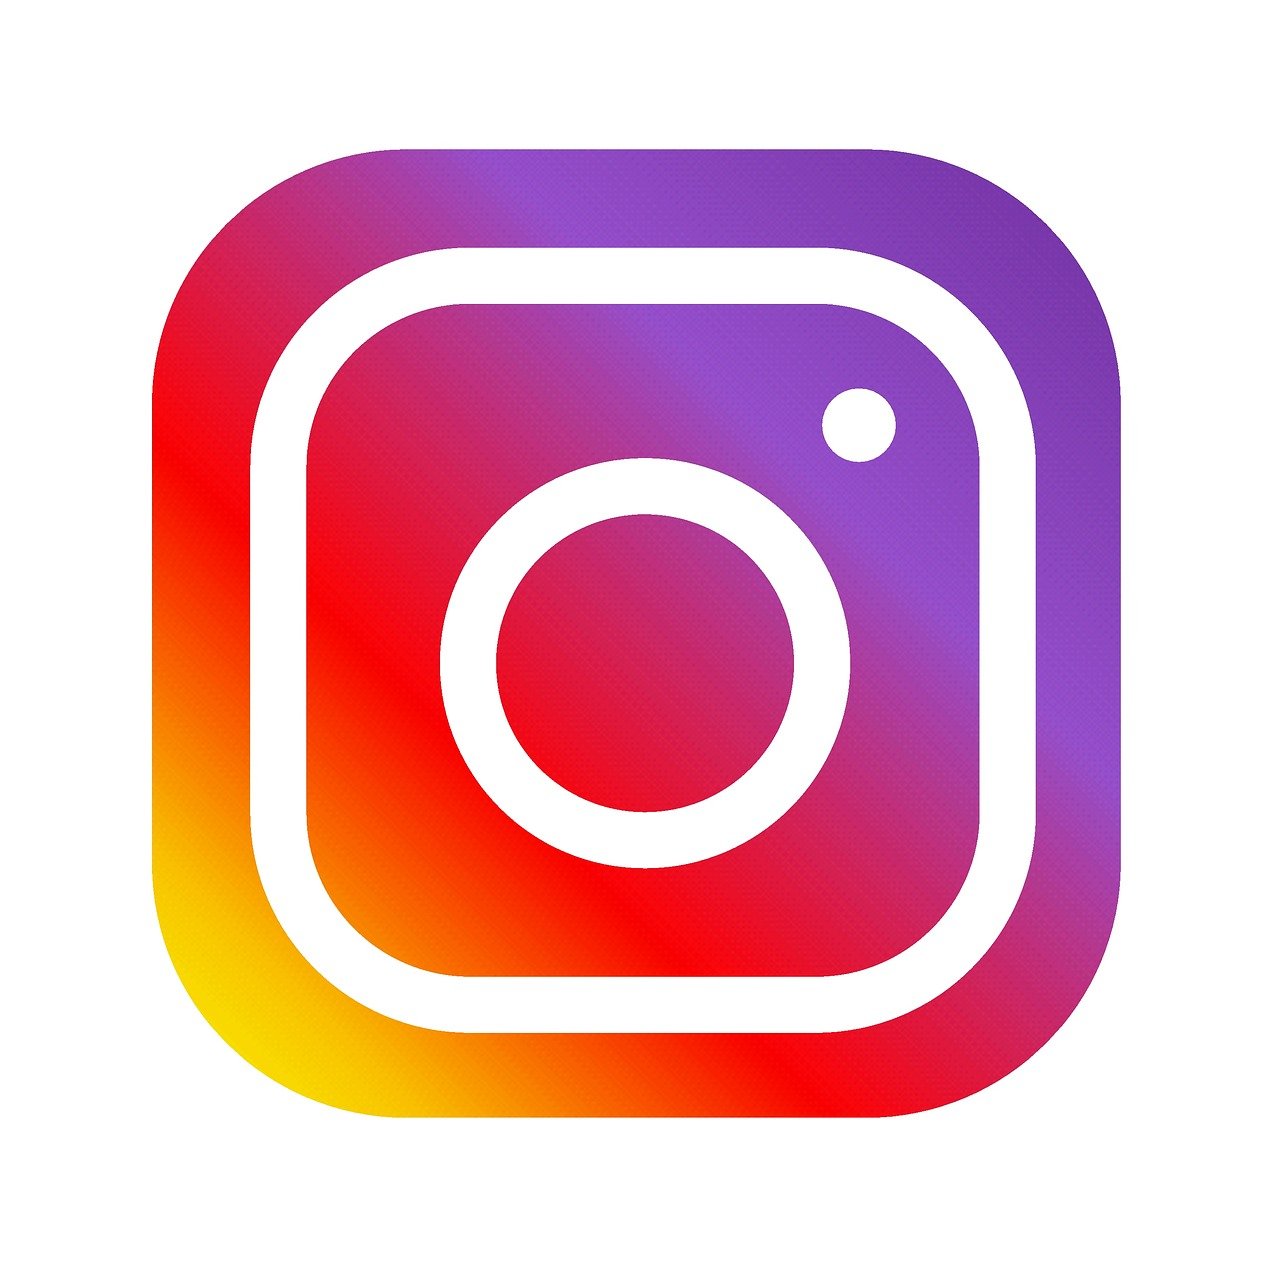 A imagem mostra a logo do instagram.